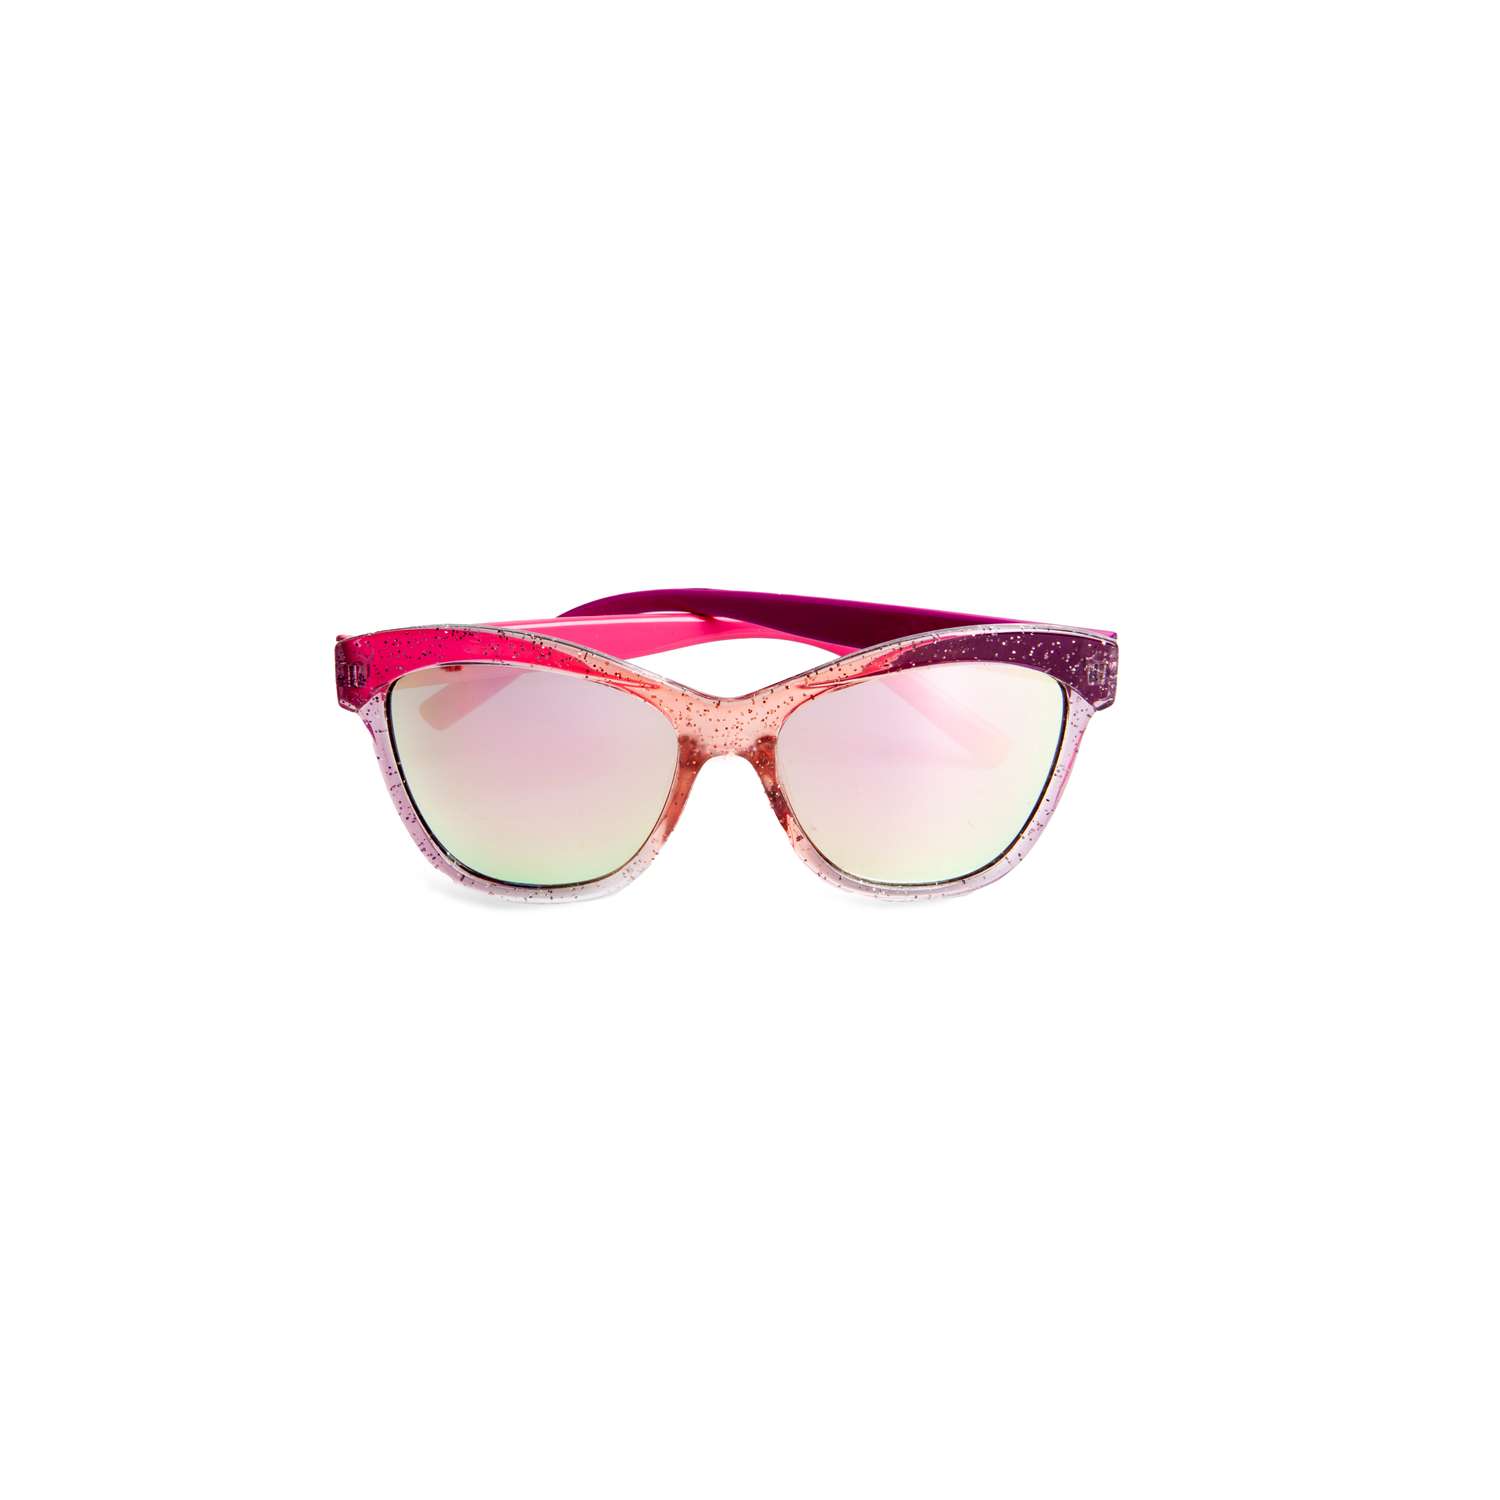 Очки cолнцезащитные Martinelia розовые с блестками 10500 - фото 2